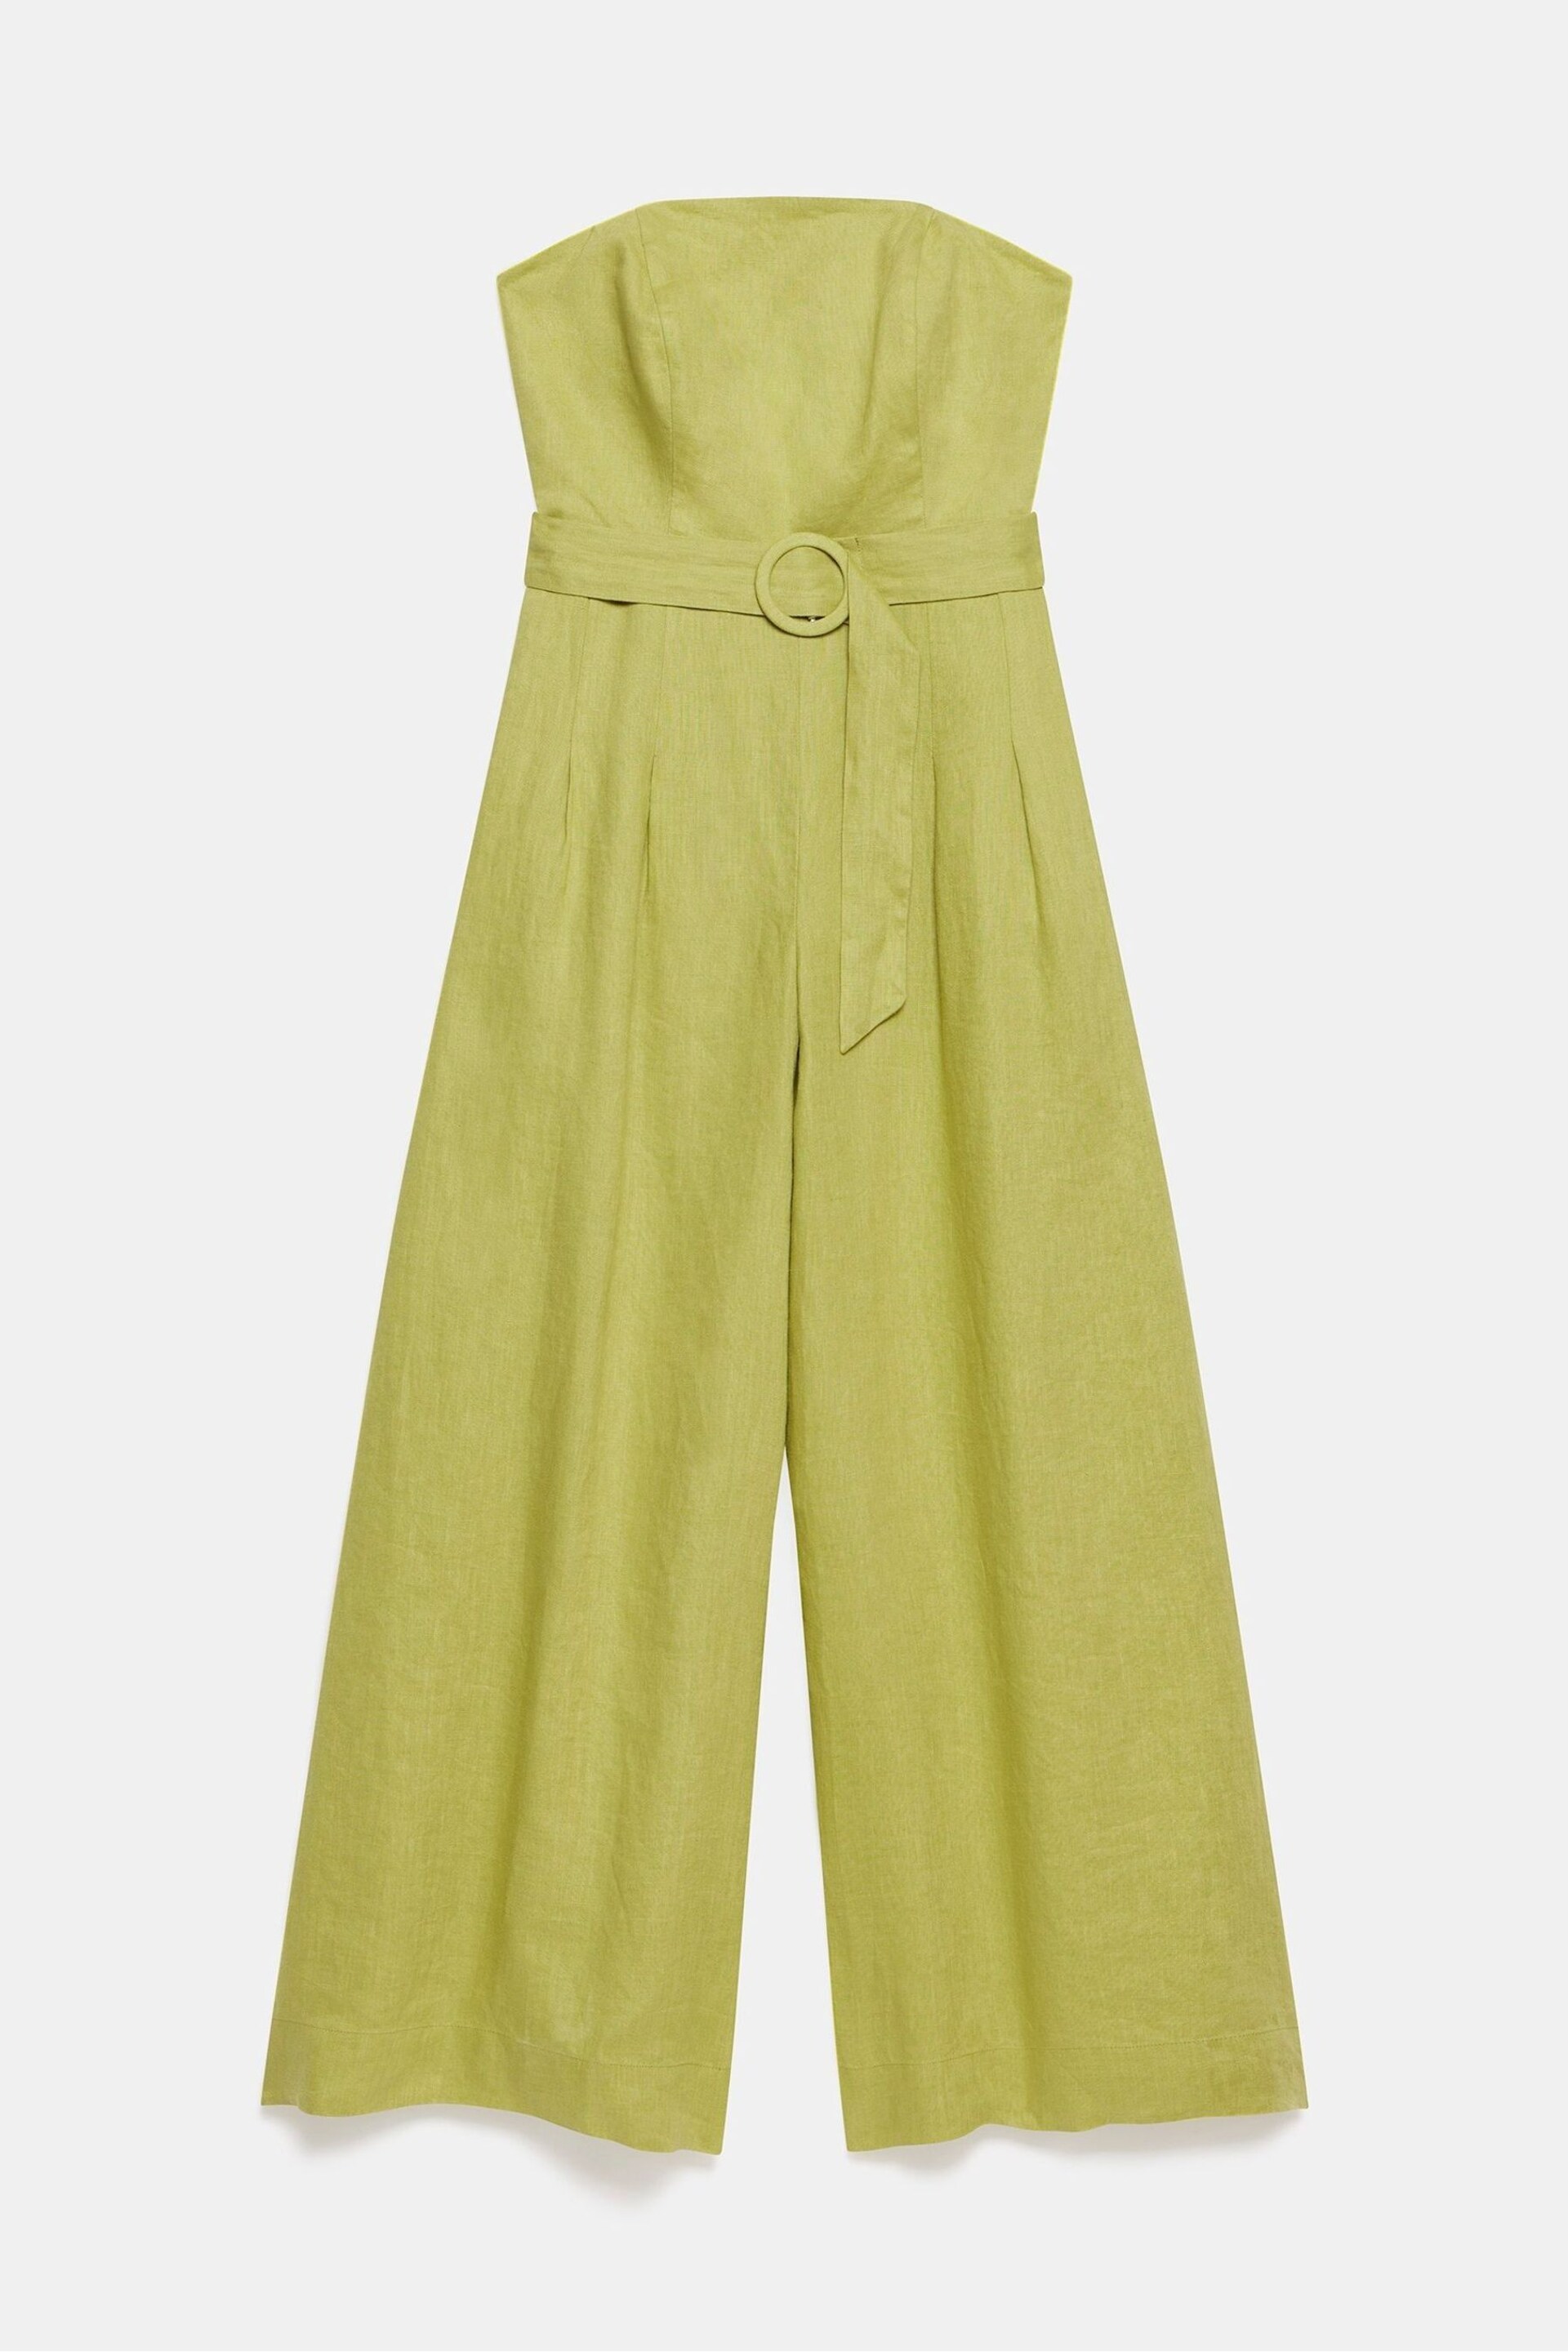 Mint Velvet Green Linen Belted Bandeau Jumpsuit - Image 3 of 4